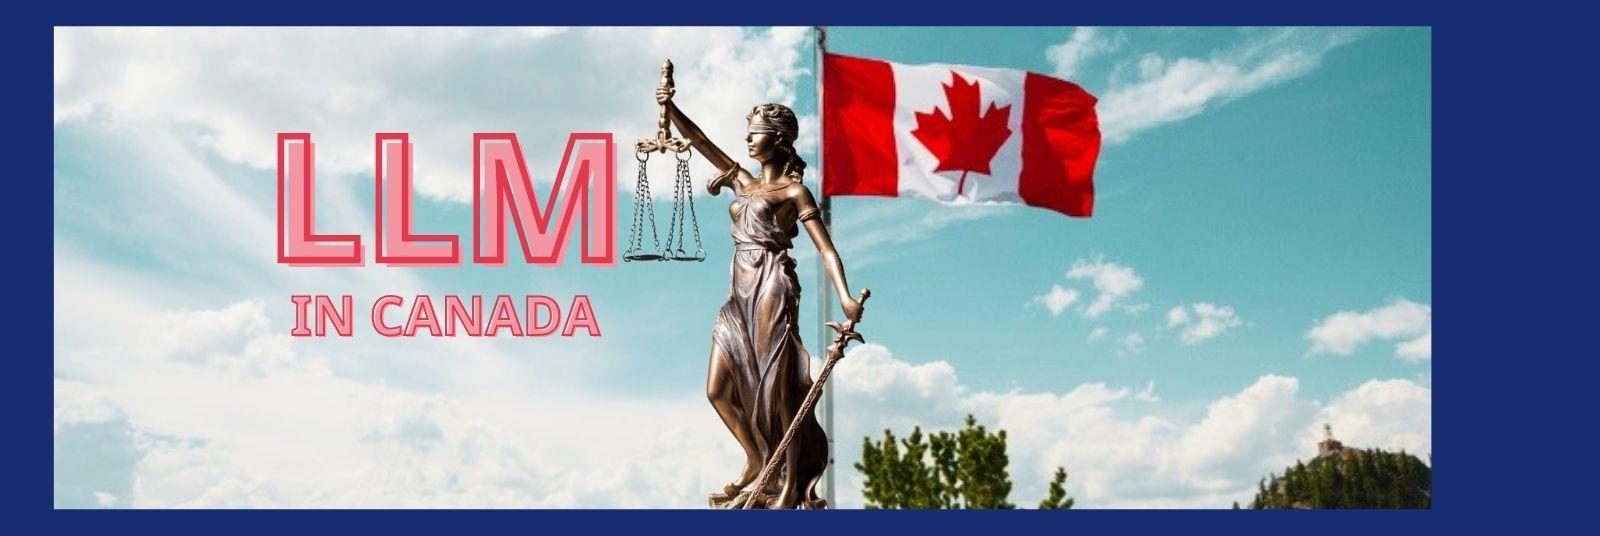 LLM in Canada